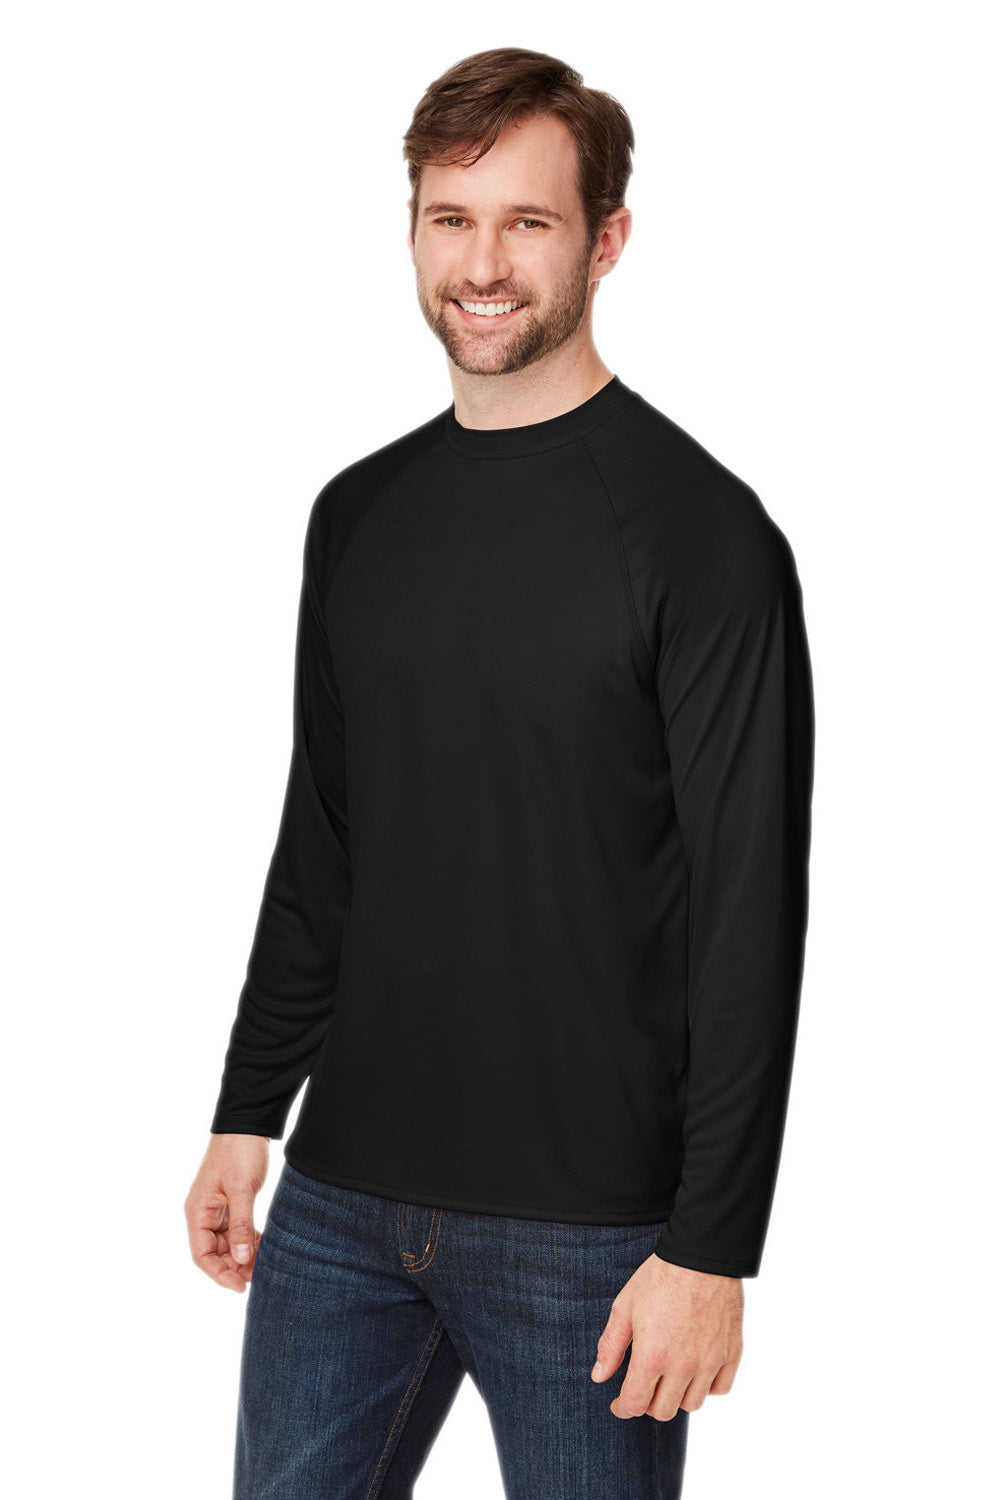 Core 365 CE110 Mens Ultra MVP Raglan Long Sleeve T-Shirt Black 3Q